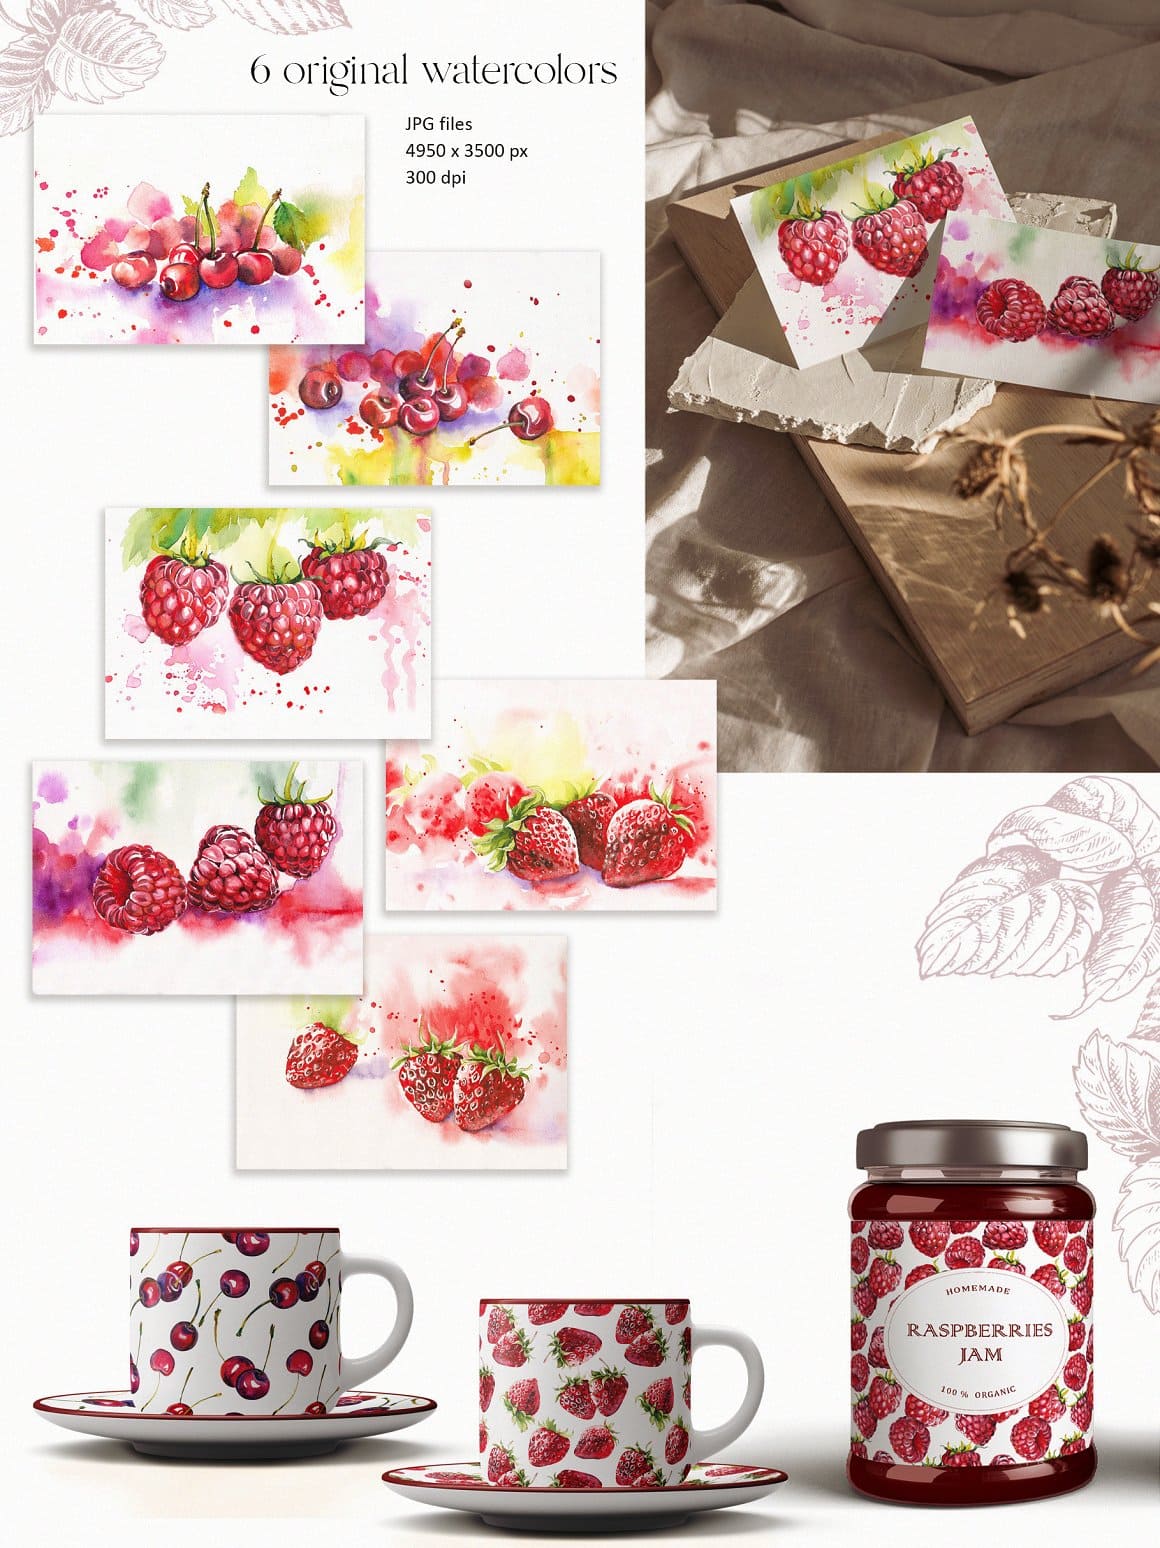 6 original watercolors of berries.